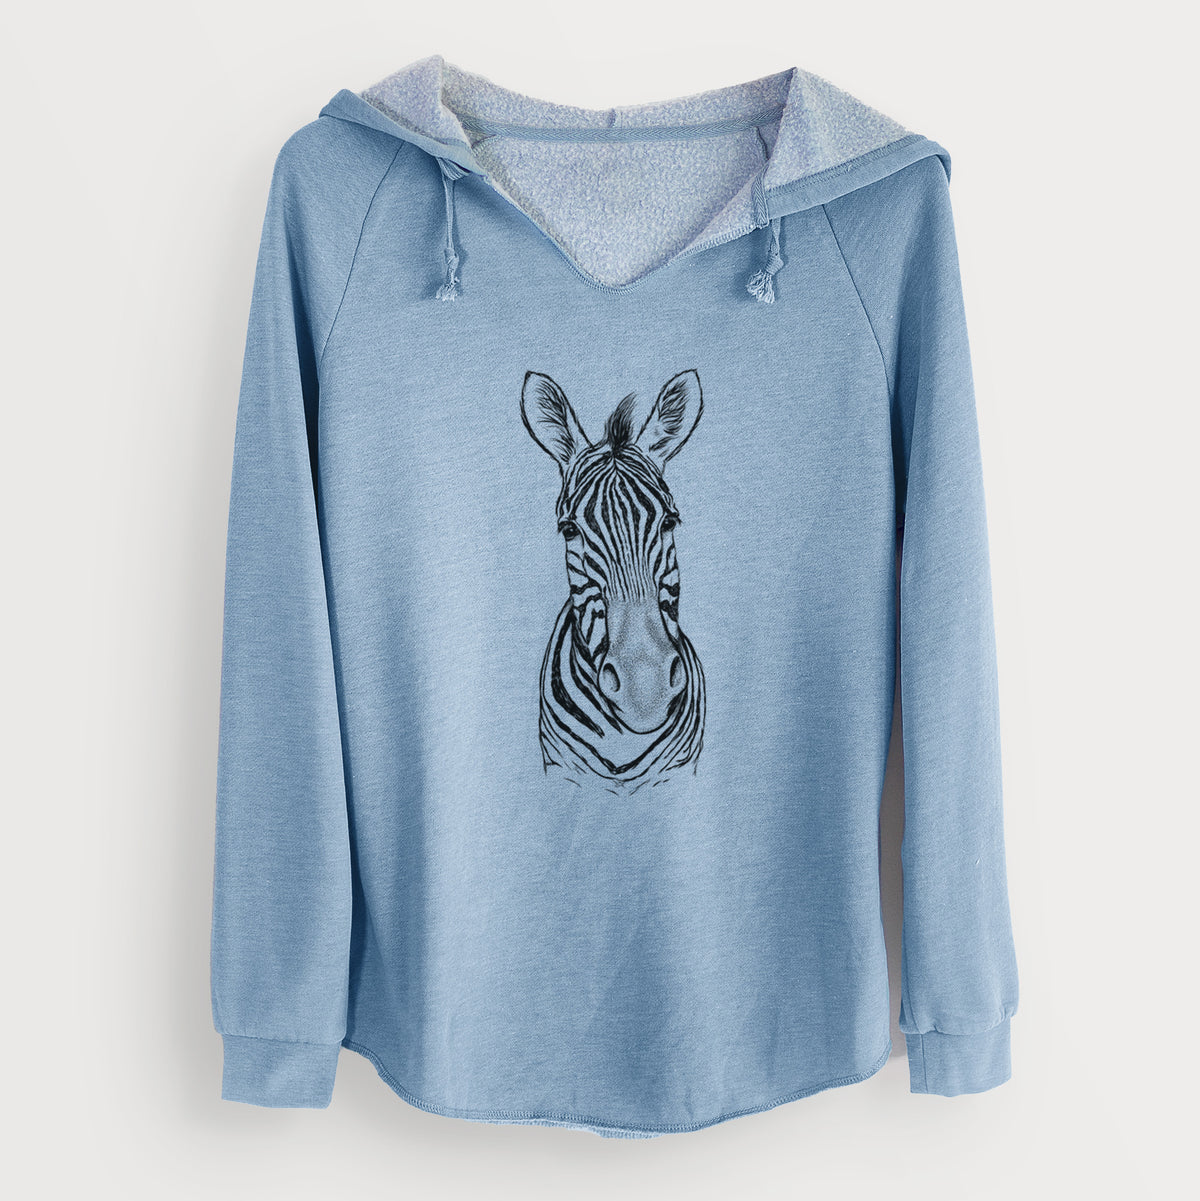 Damara Zebra - Equus quagga antiquorum - Cali Wave Hooded Sweatshirt